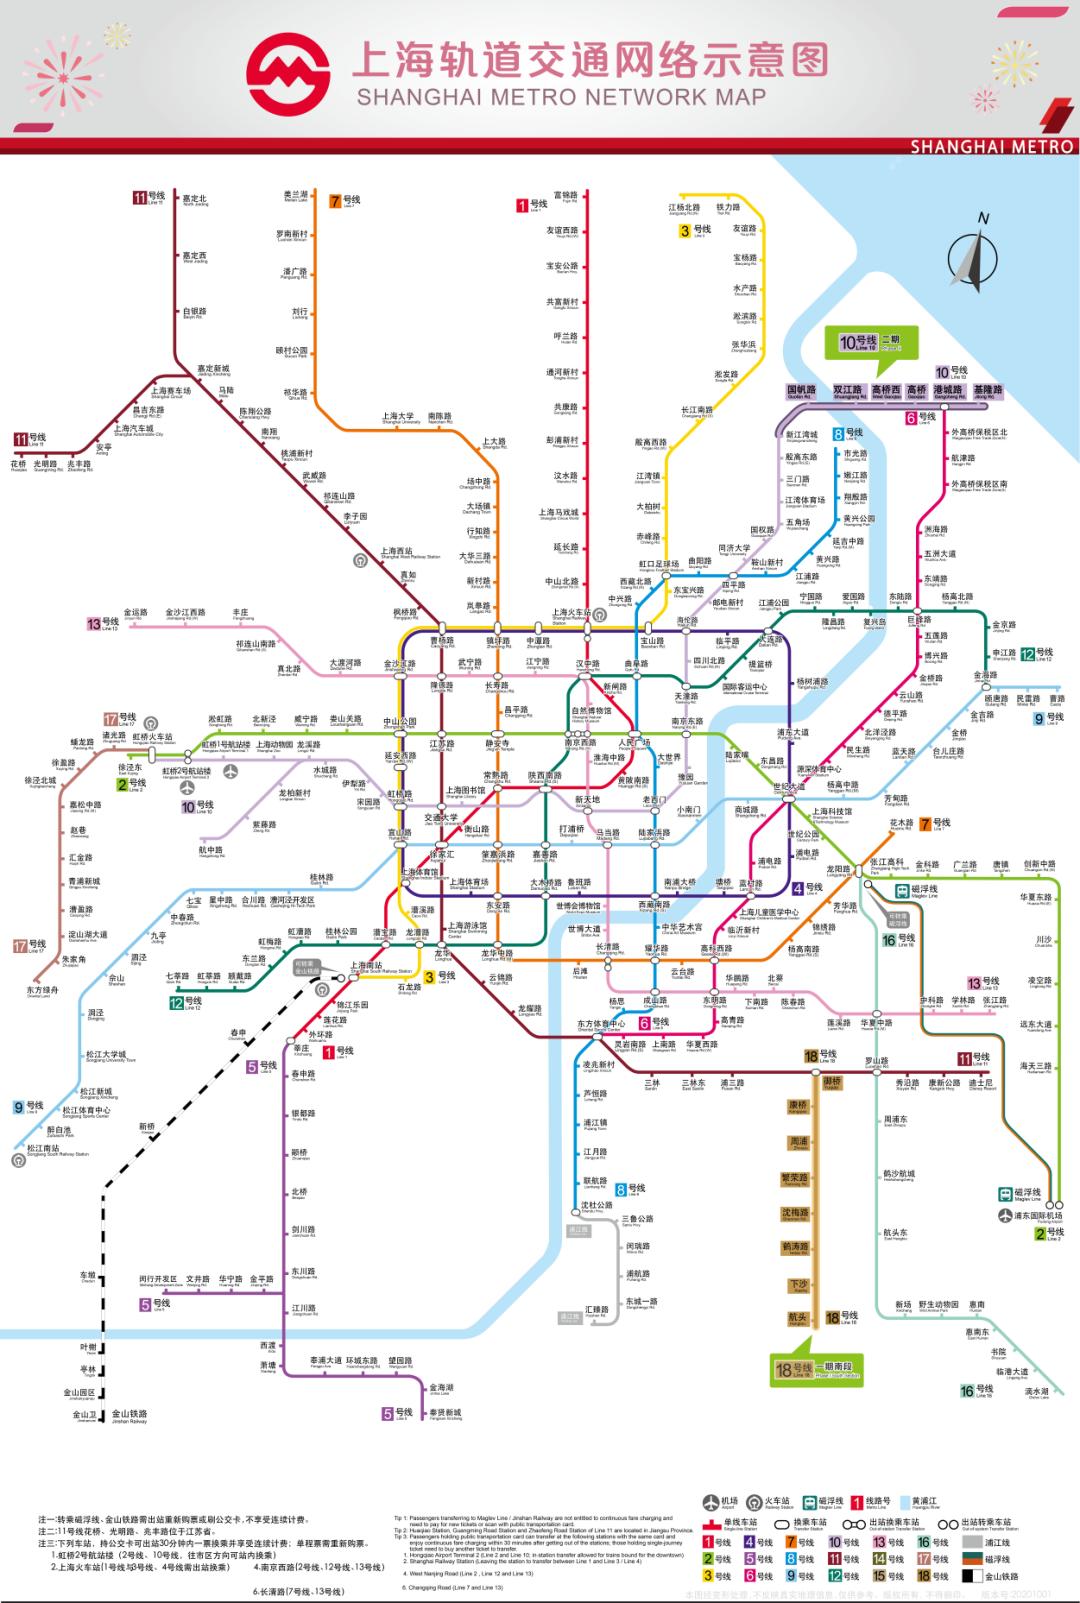 【市民云资讯】最新版上海地铁全网示意图来了!明日起